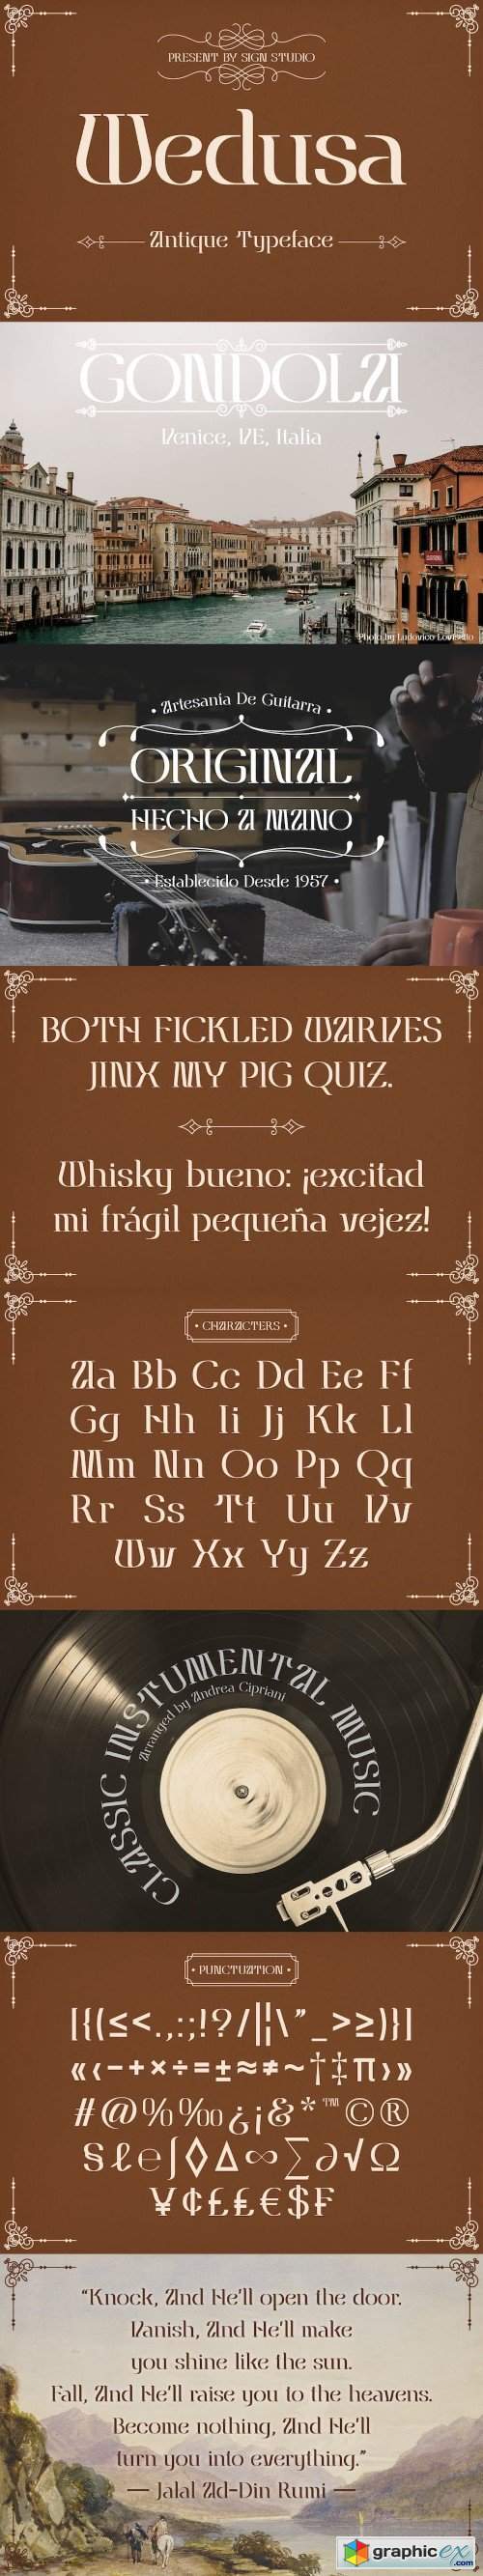 Wedusa - antique typeface